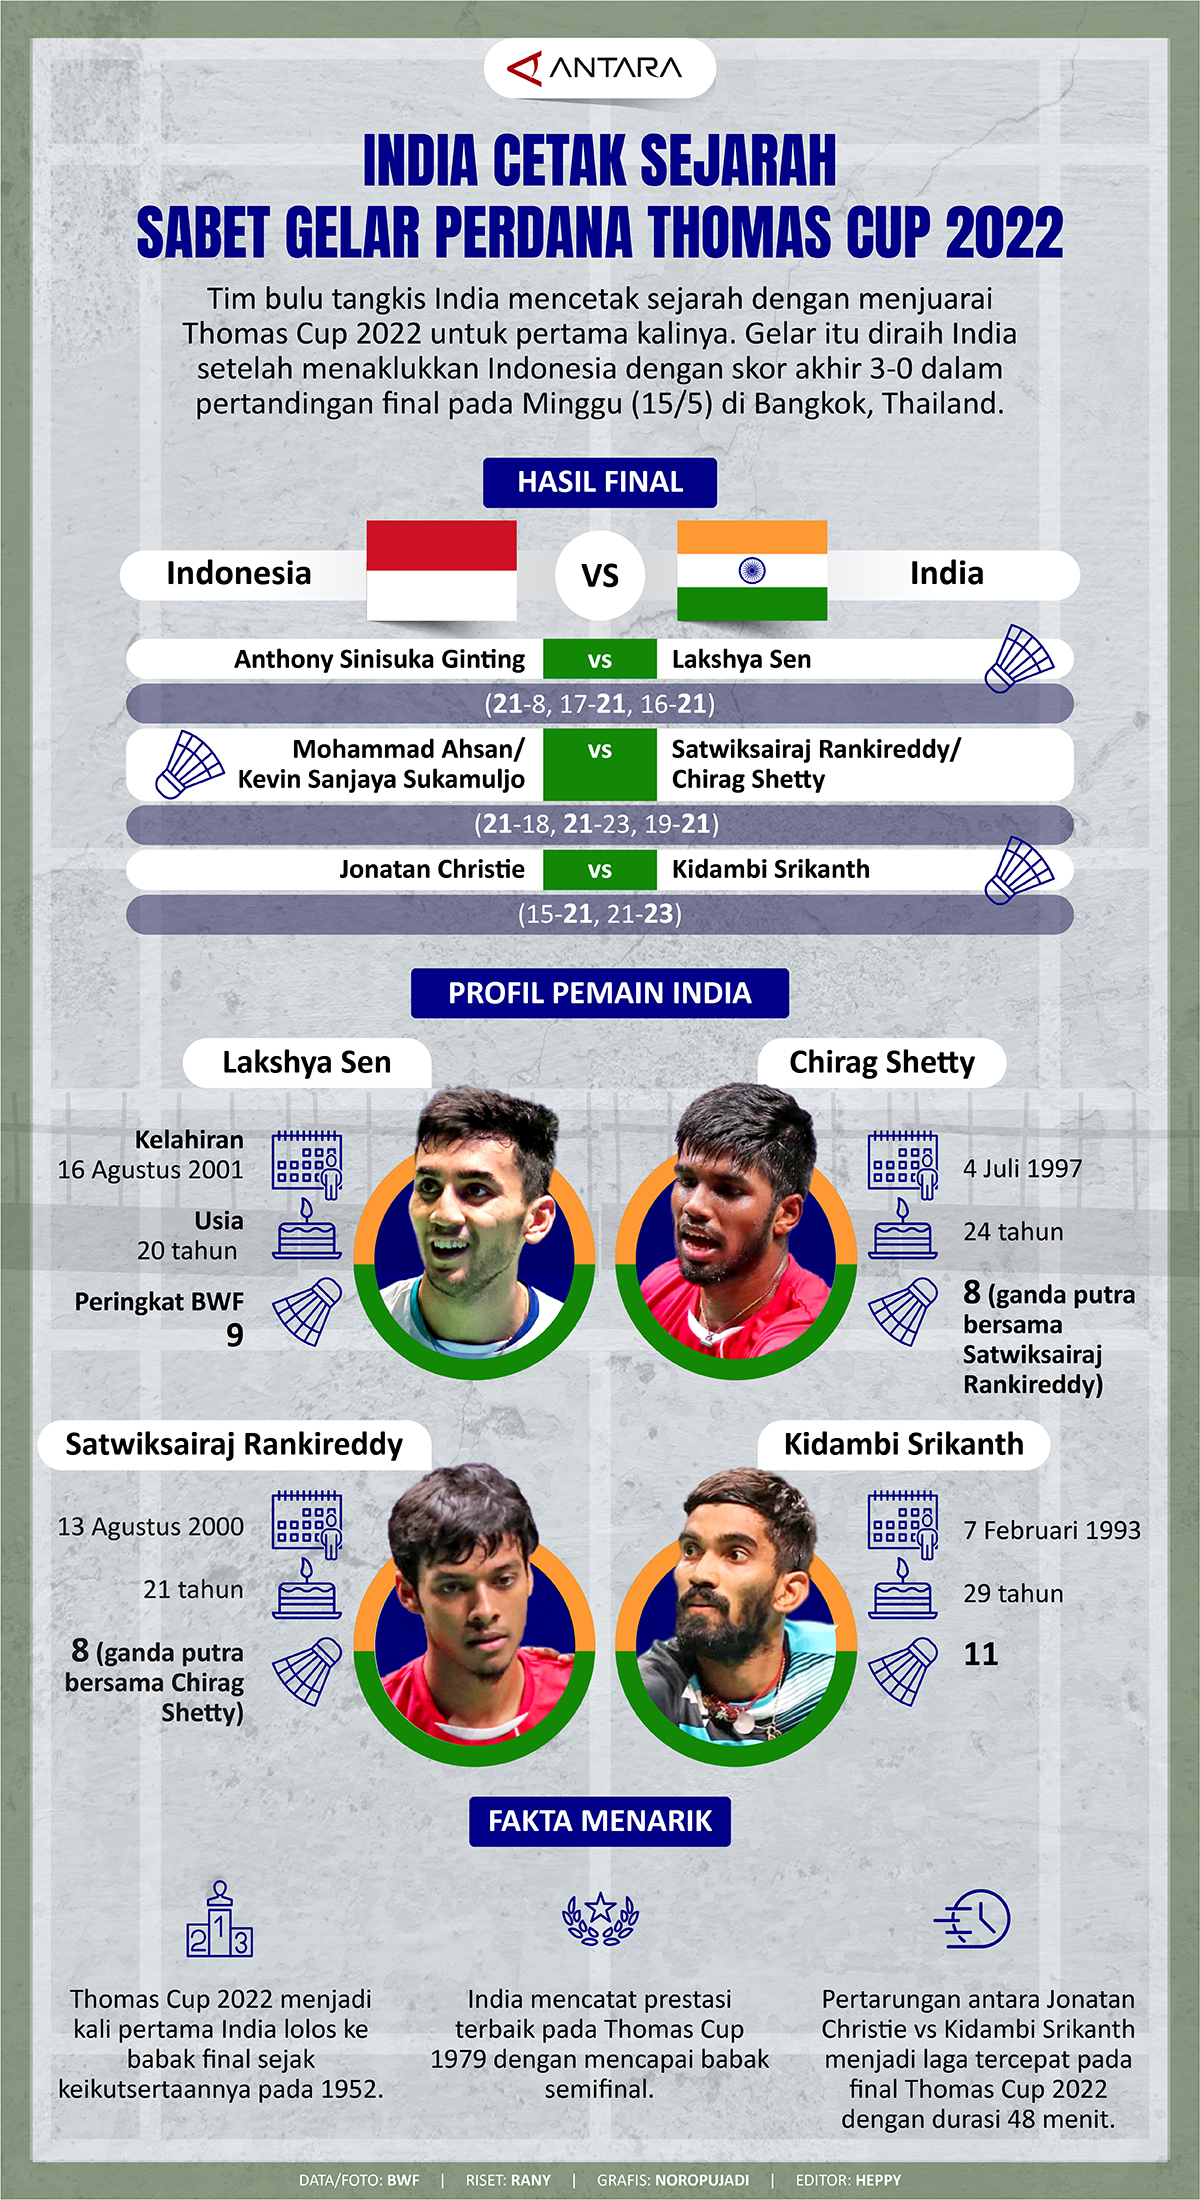 India Cetak Sejarah Sabet Gelar Perdana Thomas Cup 2022